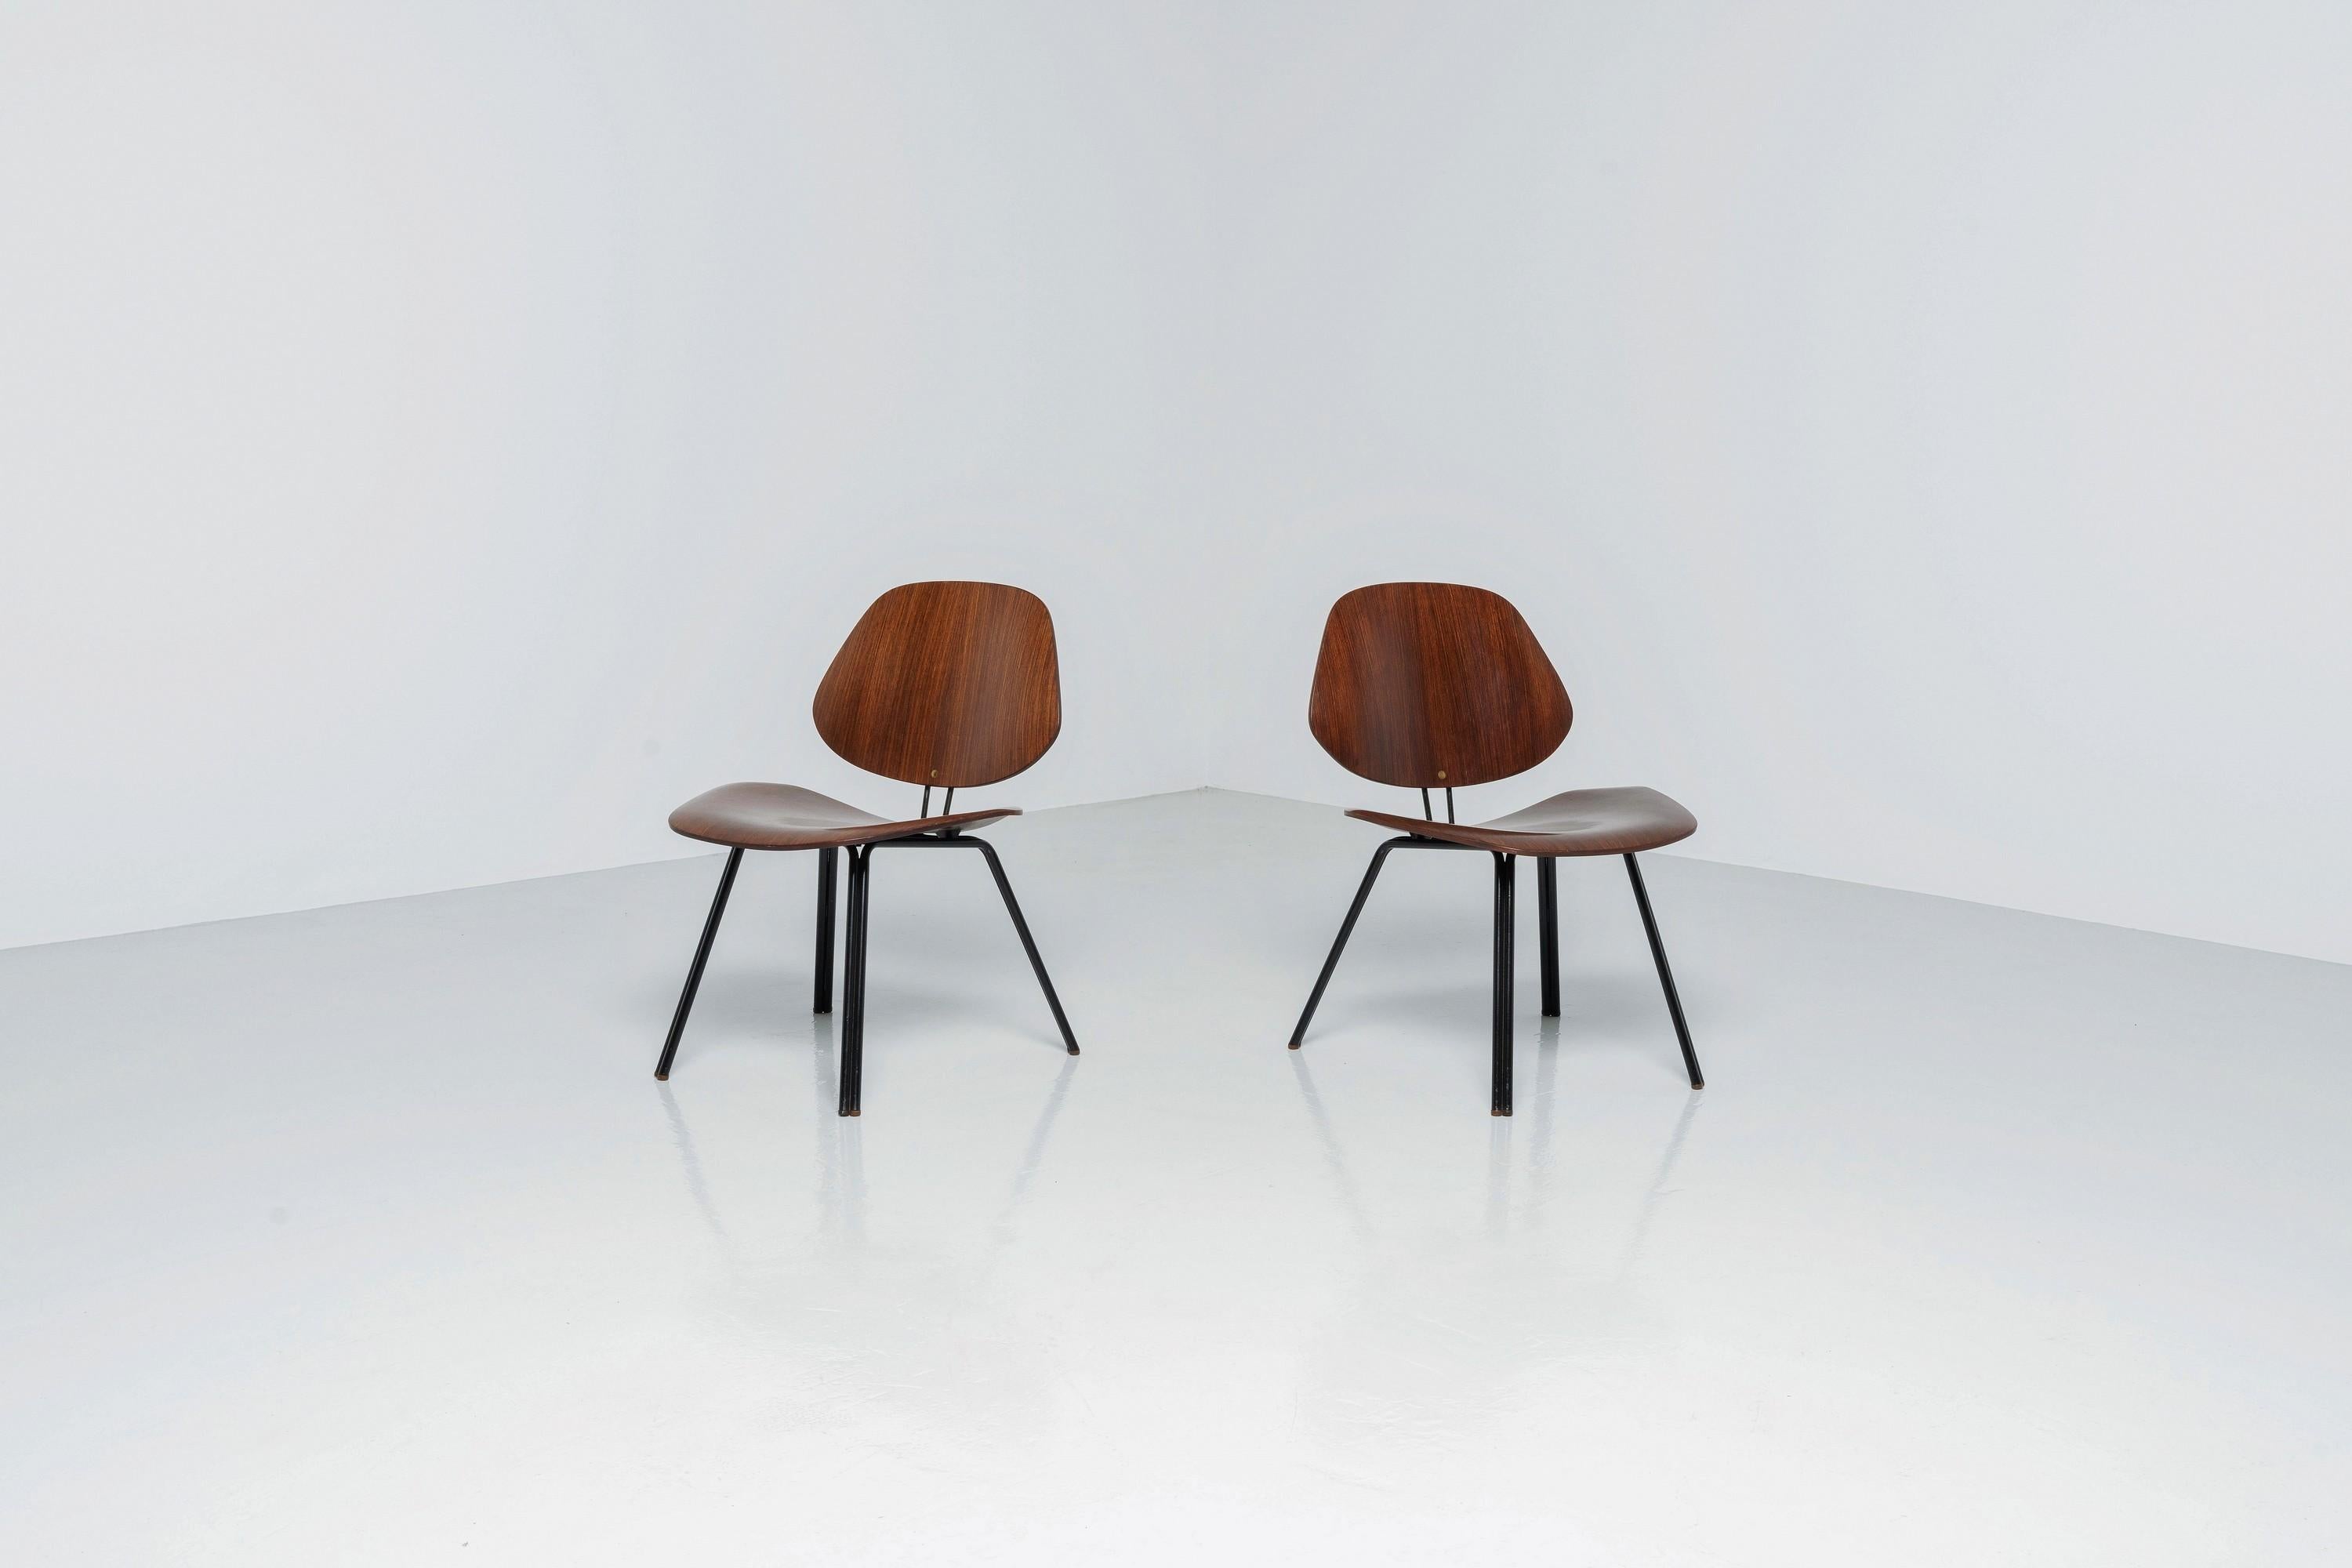 Schöne P31-Stühle von Osvaldo Borsani, die 1957 in Italien von Tecno hergestellt wurden. Die Stühle sind in vollem Originalzustand und haben eine wunderbare Patina, die sie noch wertvoller macht. Diese beiden Stühle sind mit dem Tecno-Emblem auf der